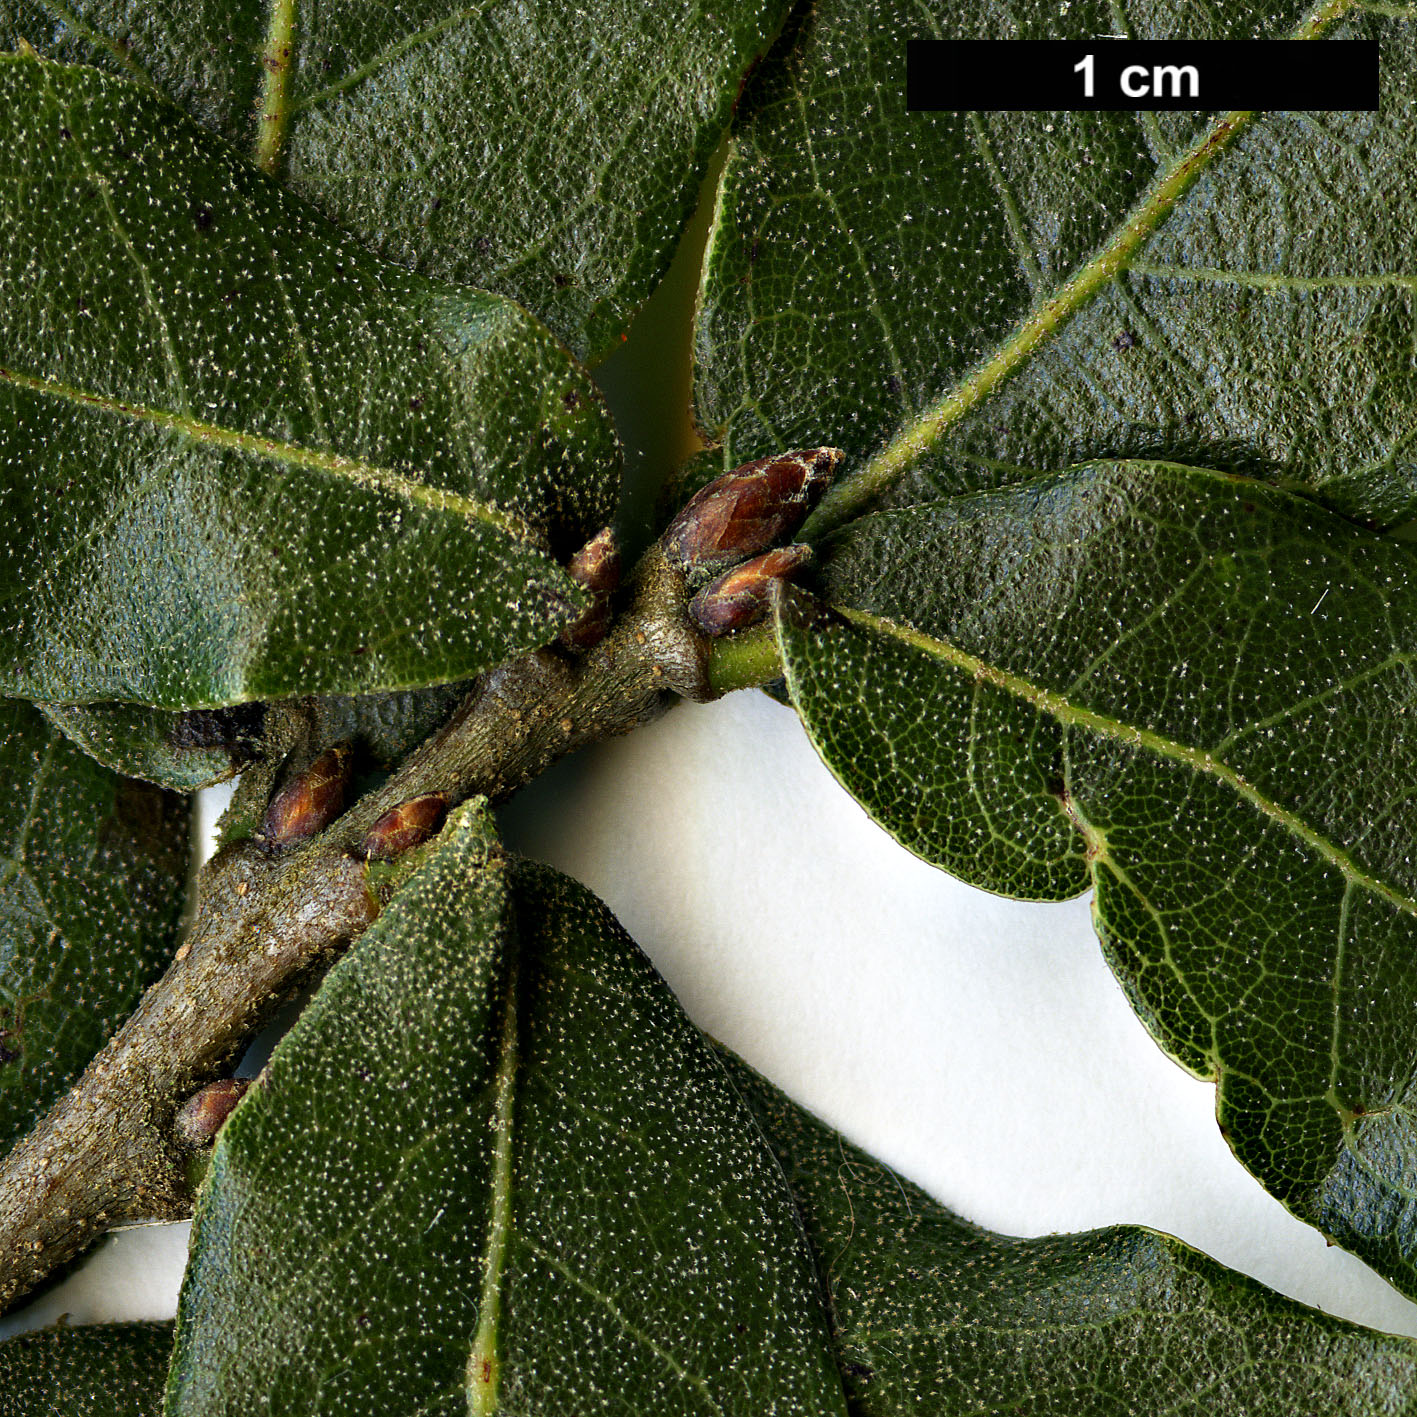 High resolution image: Family: Fagaceae - Genus: Quercus - Taxon: galeanensis HORT